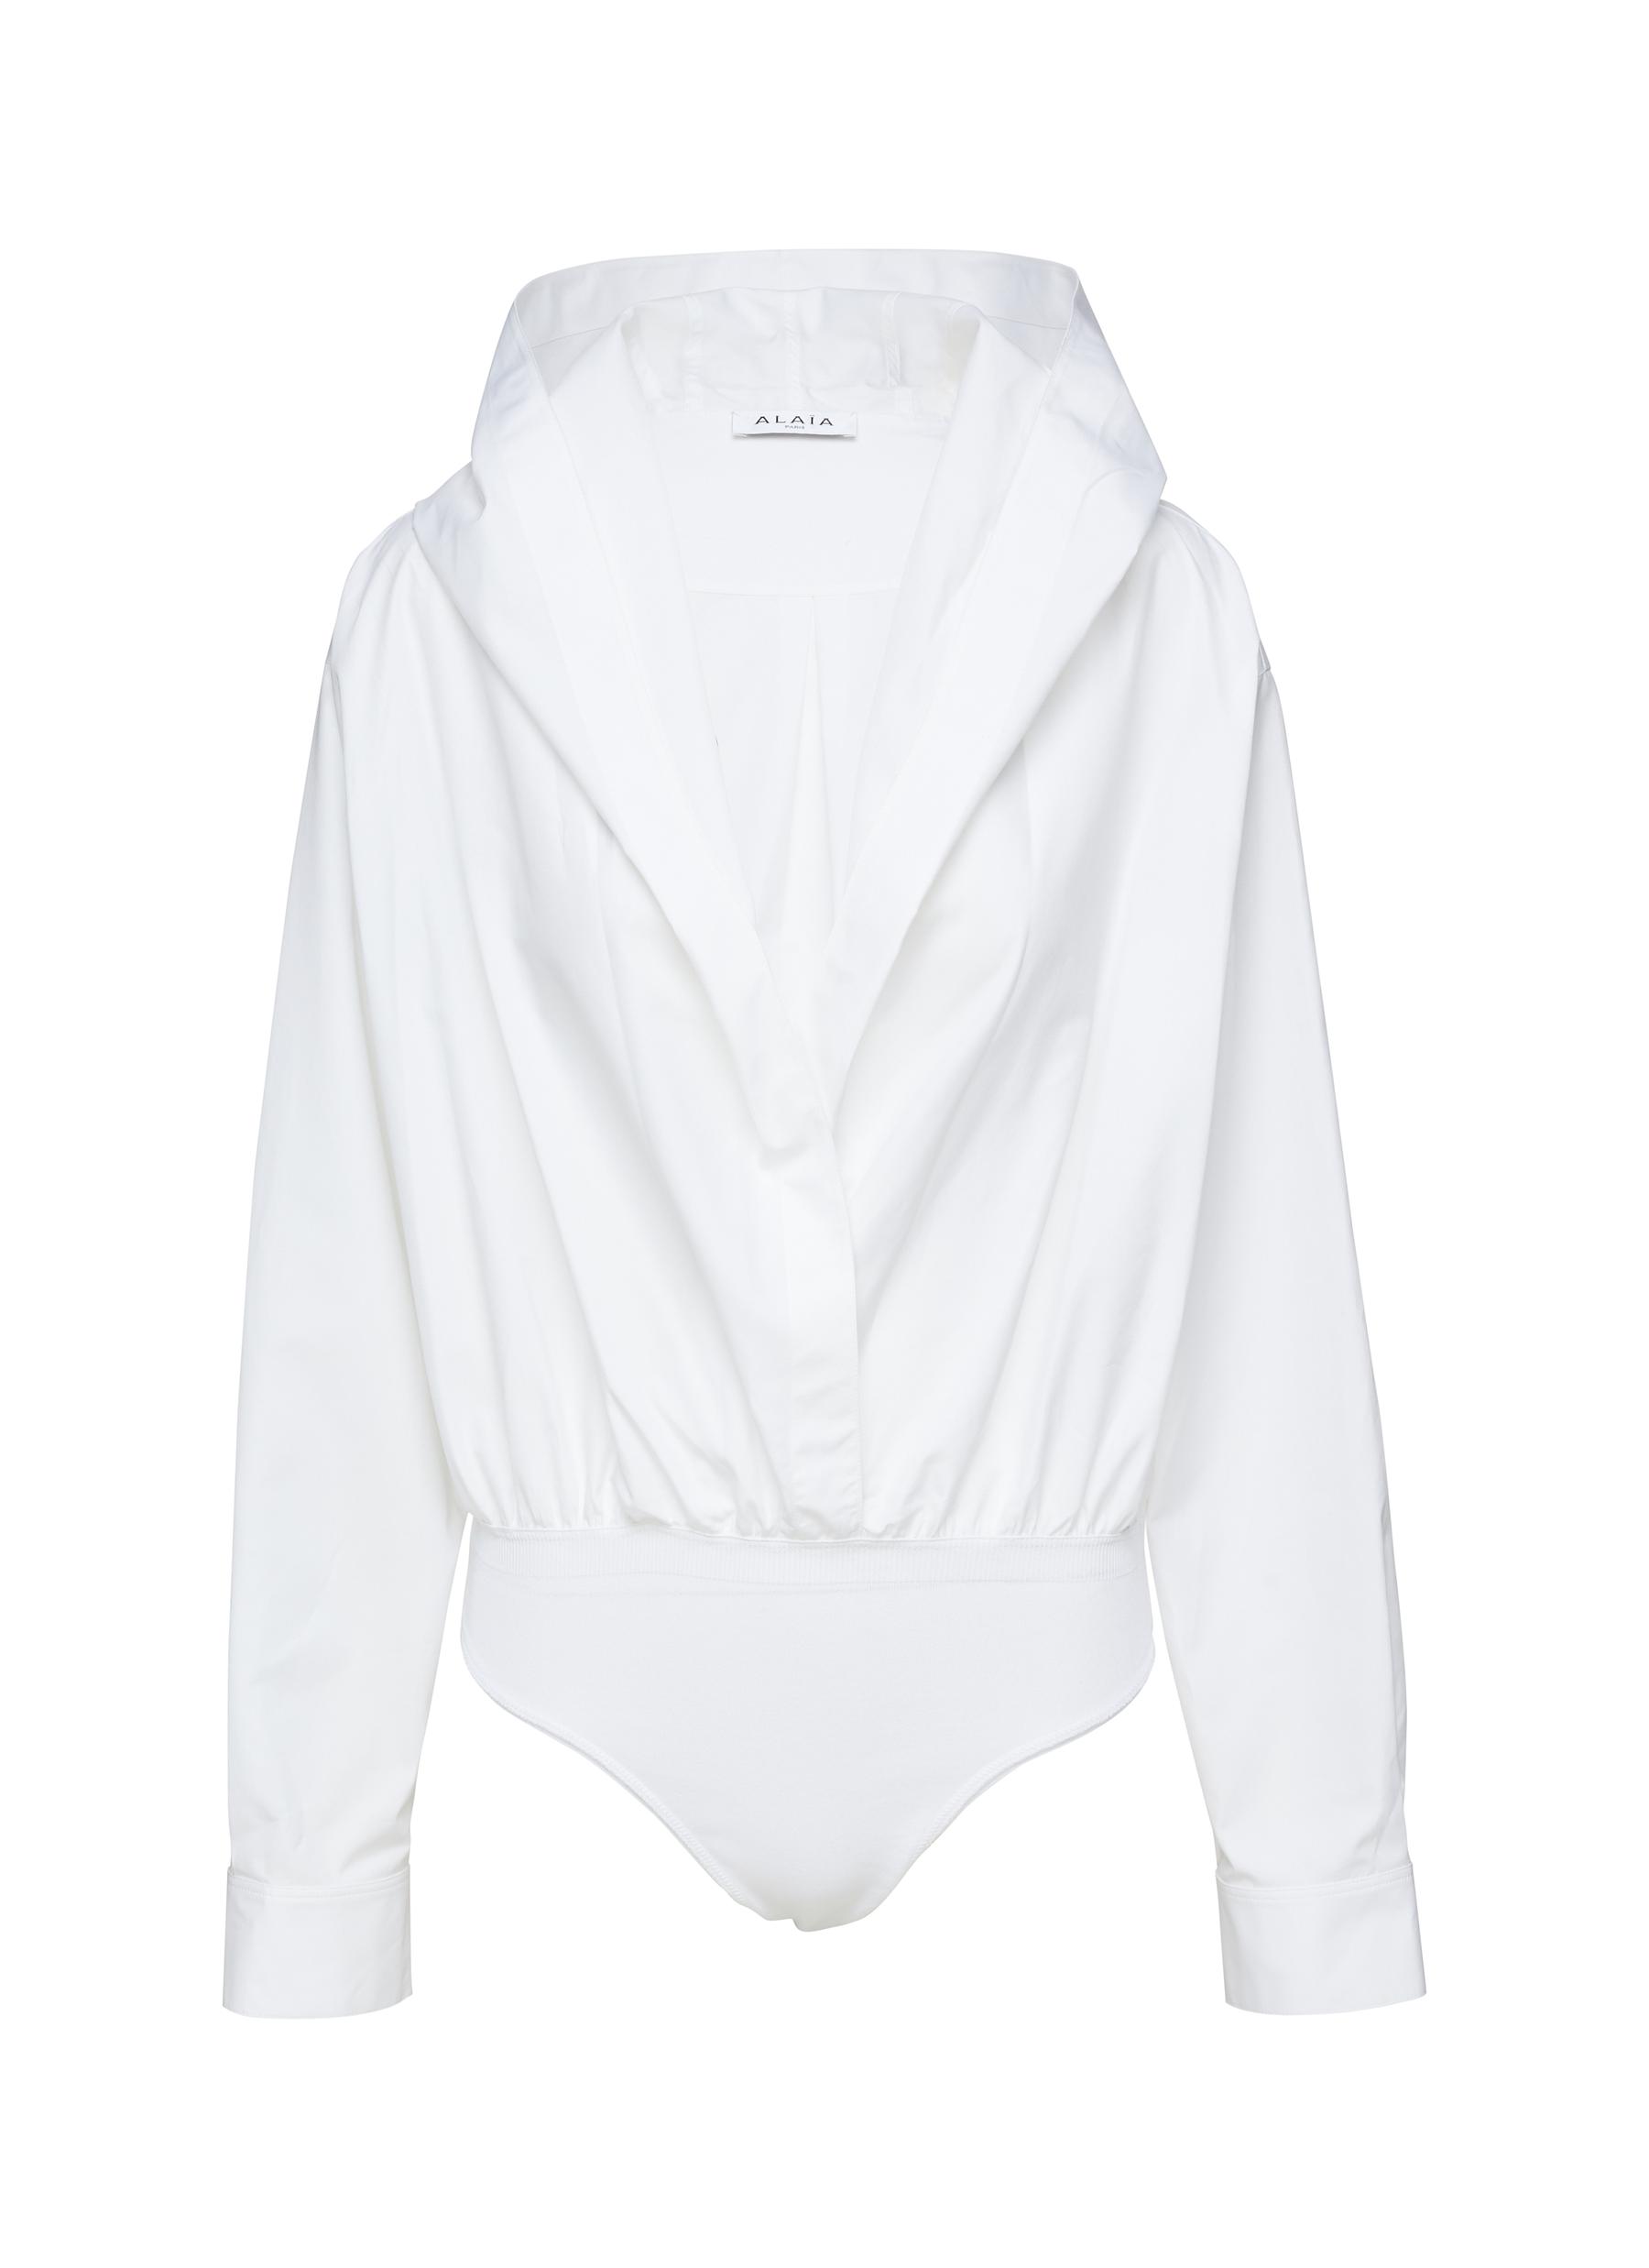 Alaïa Cotton Hooded Bodysuit In White